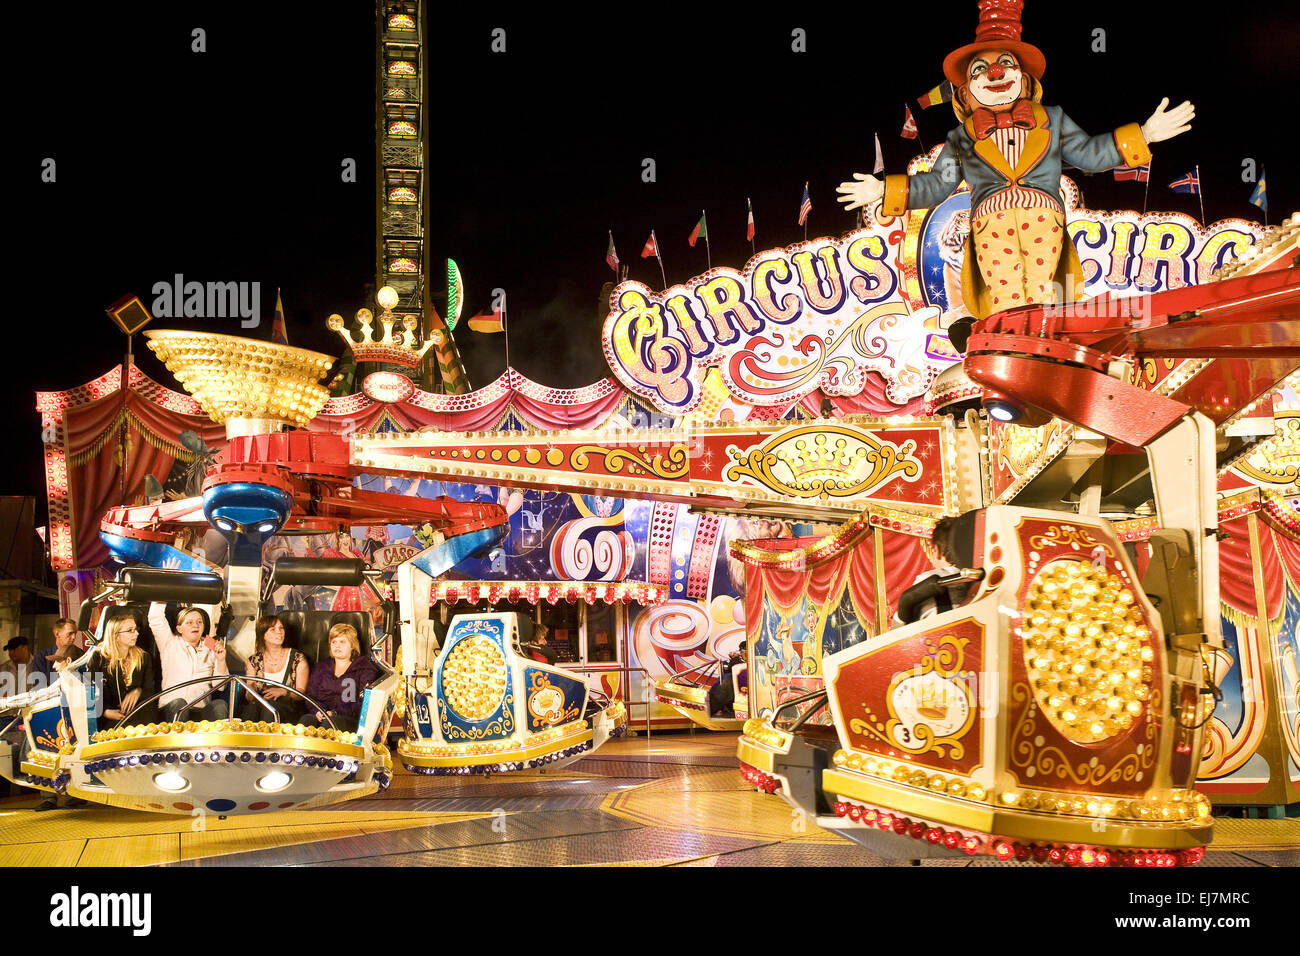 Cranger fair, Herne, Germany Stock Photo